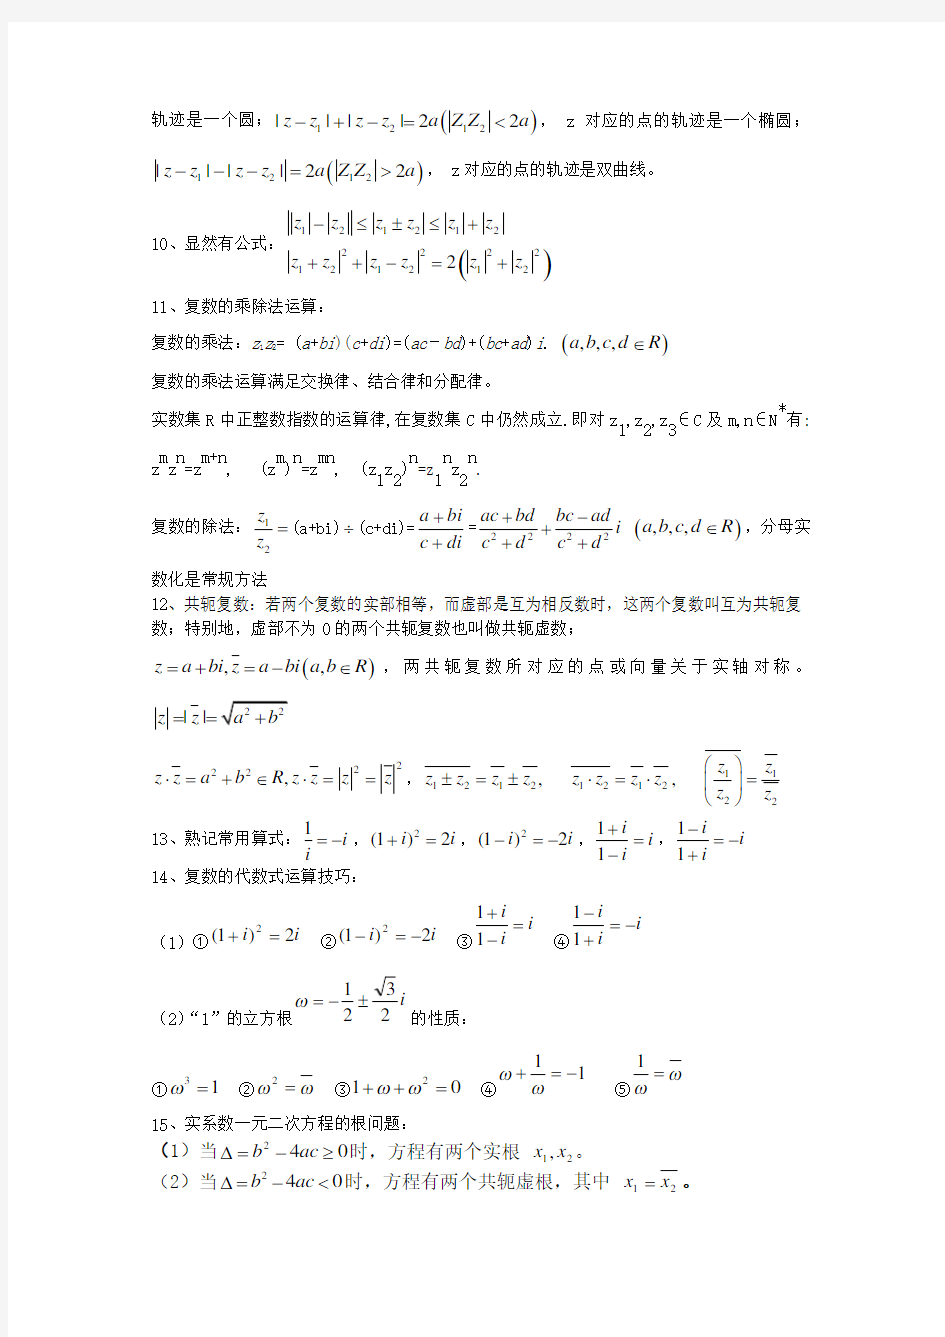 (完整版)上海高中数学-复数讲义